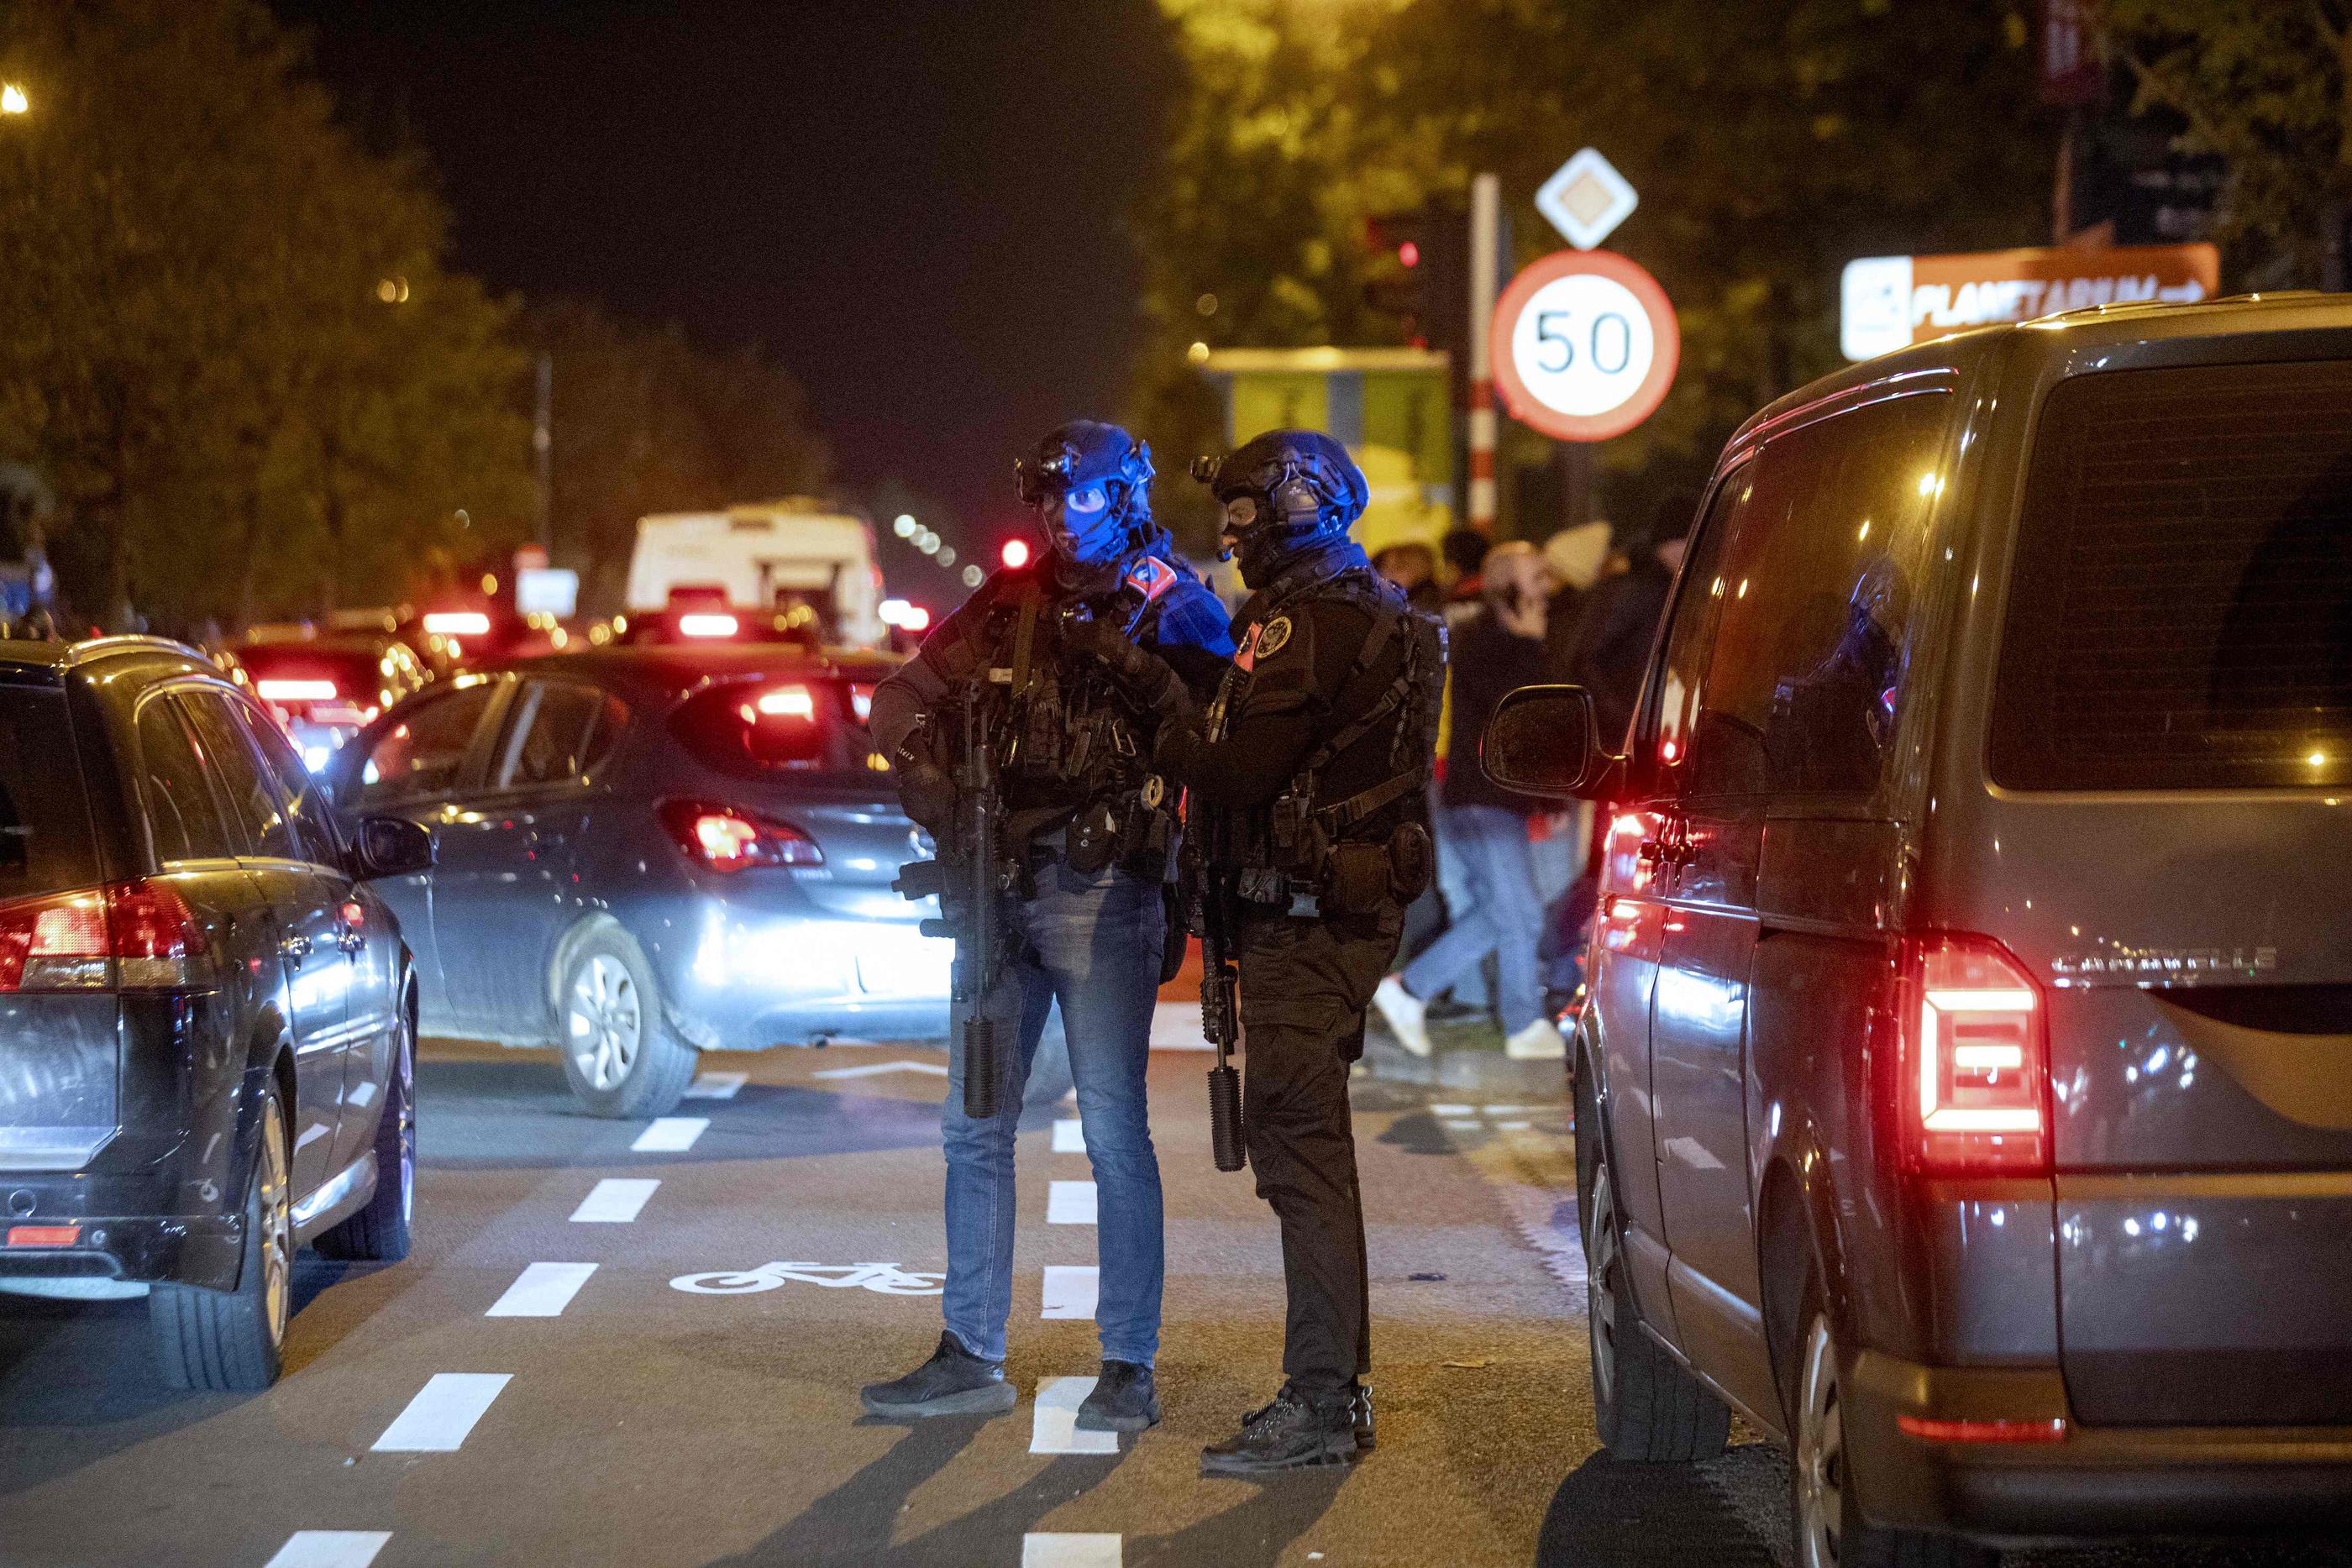 A Bruxelles, près du stade Roi Baudouin, lundi soir, après l'attentat qui a coûté la vie à deux Suédois. AFP/Belga/Hatim Kaghat